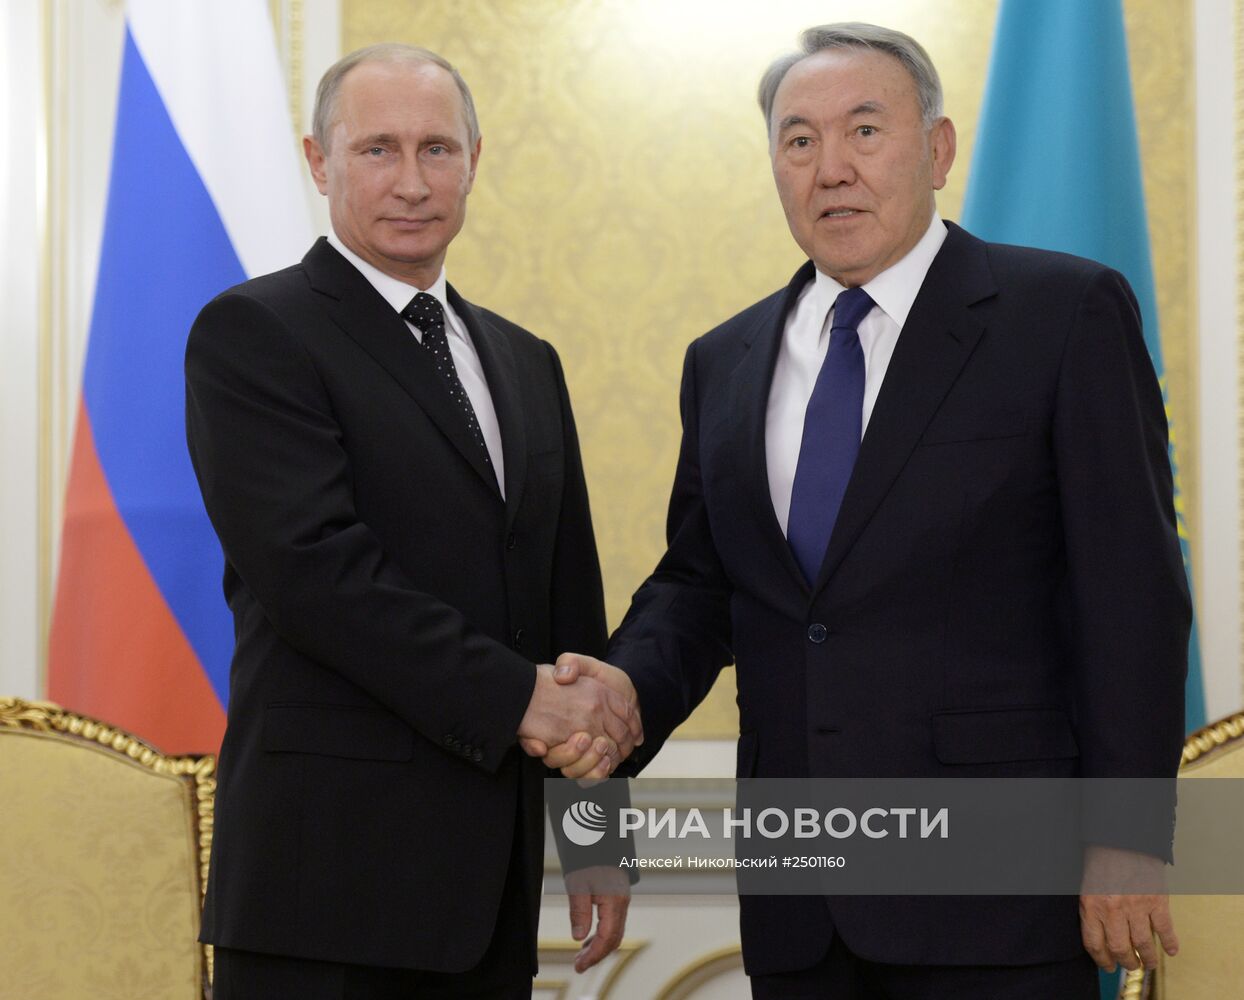 В.Путин прибыл в Казахстан для участия в форуме межрегионального сотрудничества России и Казахстана.